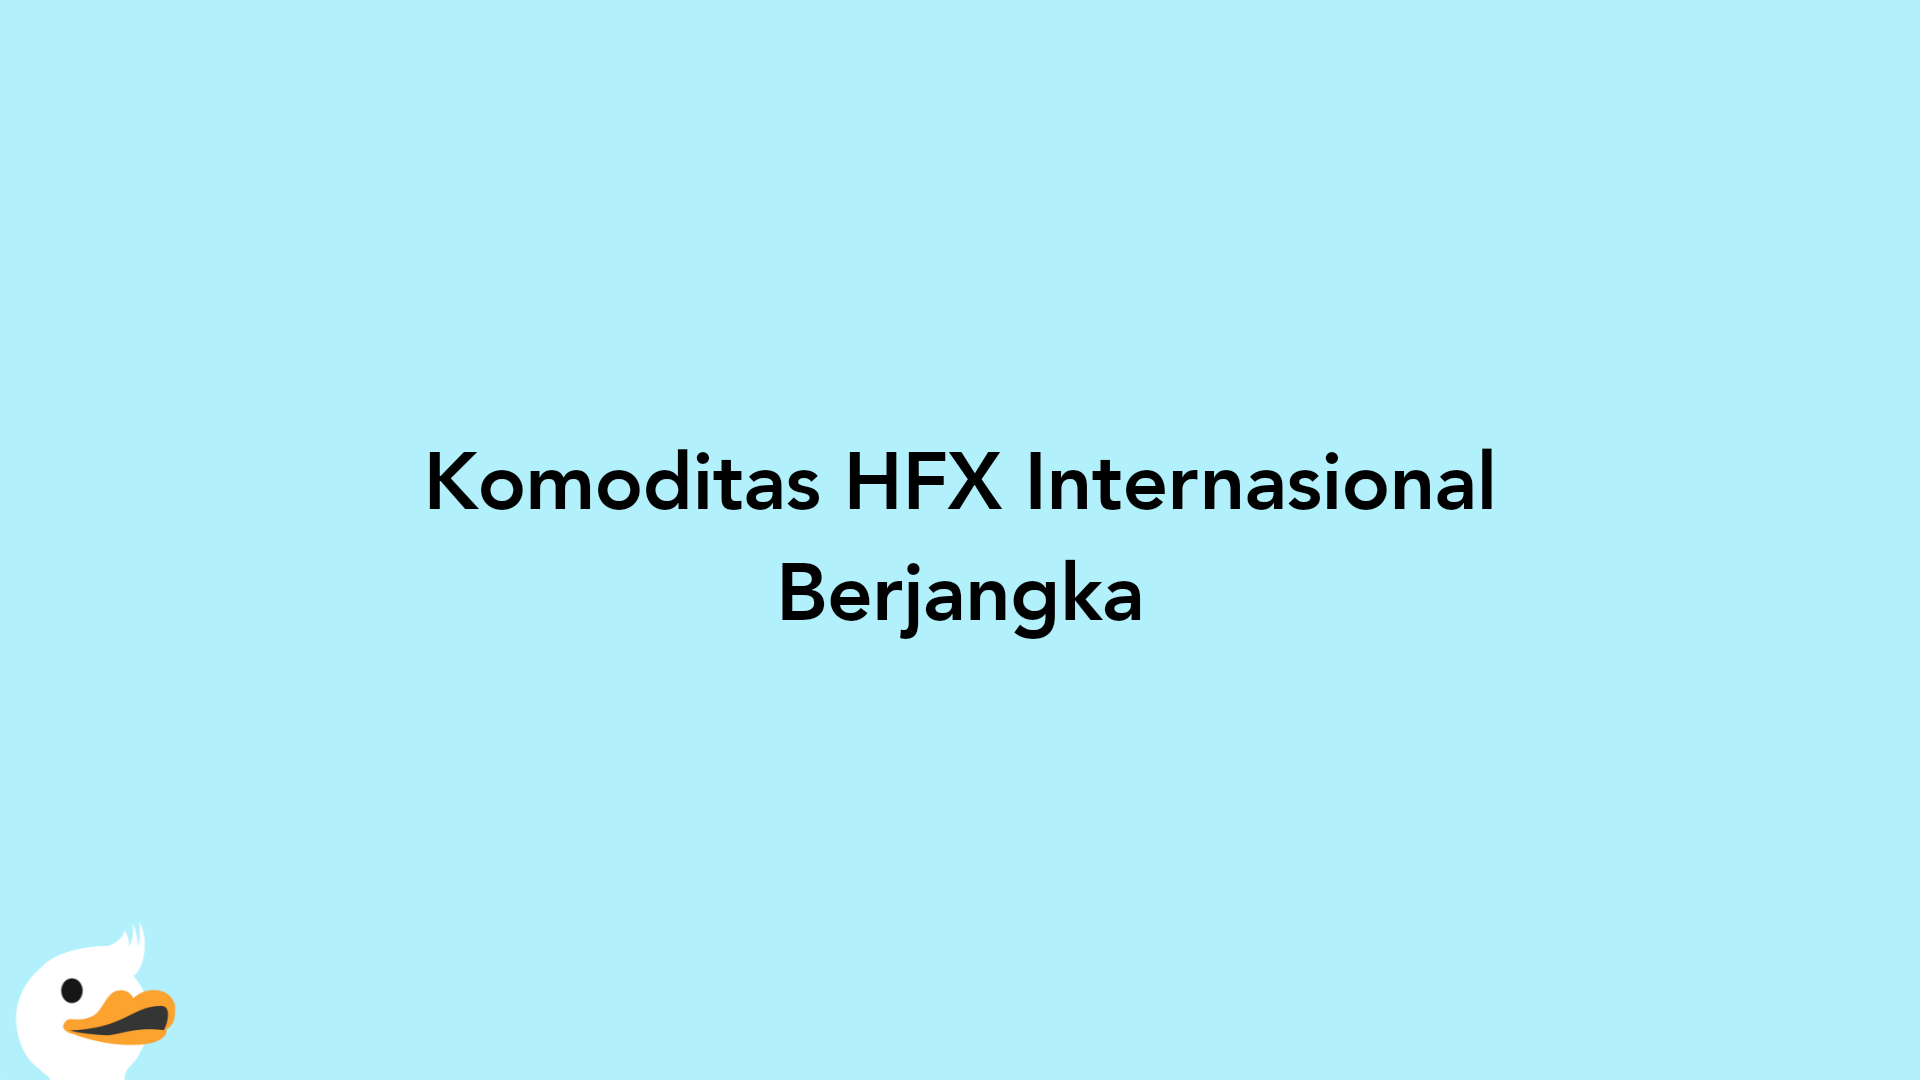 Komoditas HFX Internasional Berjangka